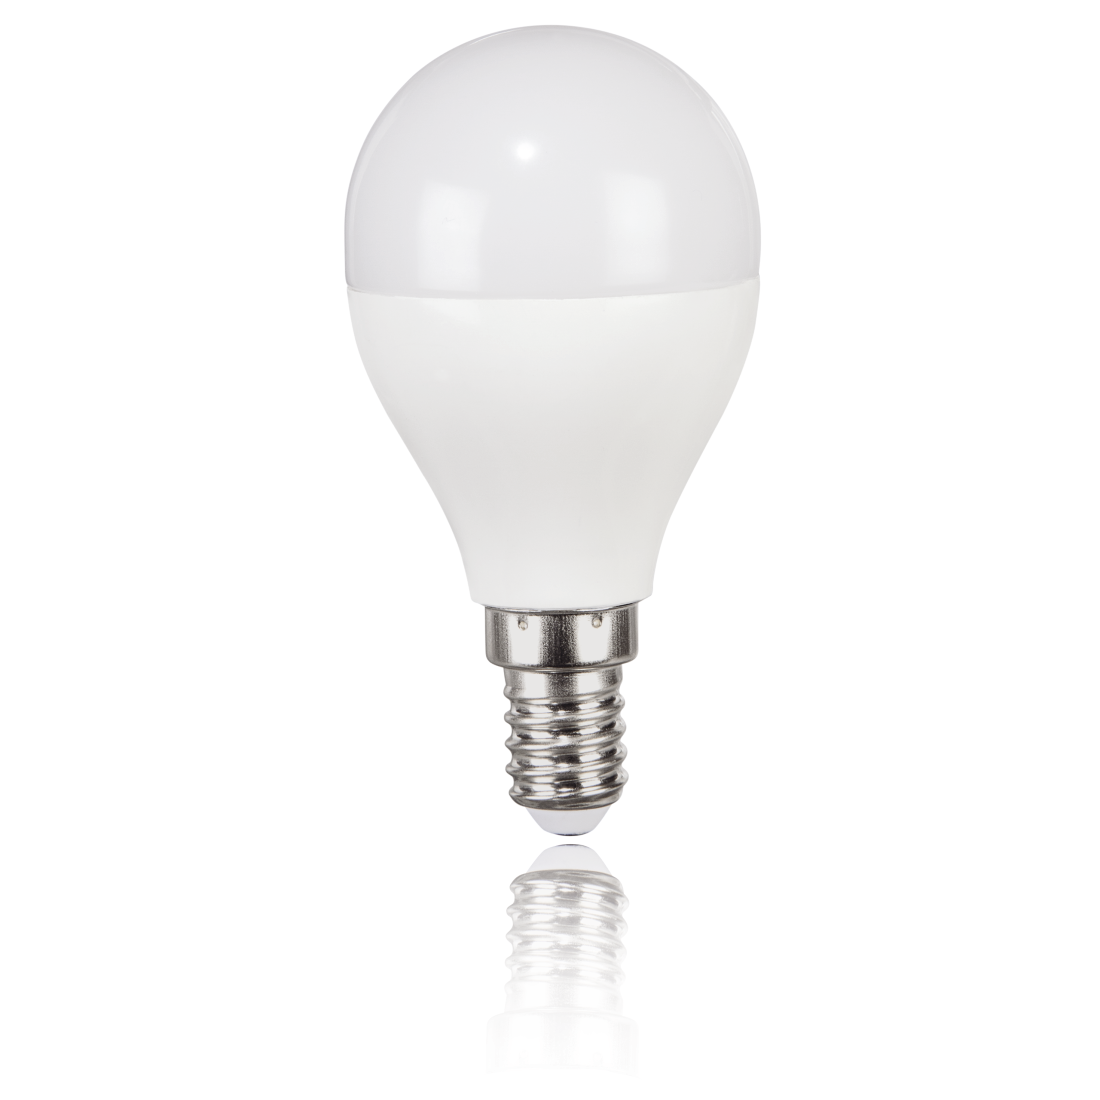 abx2 Druckfähige Abbildung 2 - Xavax, LED-Lampe, E14, 470lm ersetzt 40W, Tropfenlampe, Tageslicht